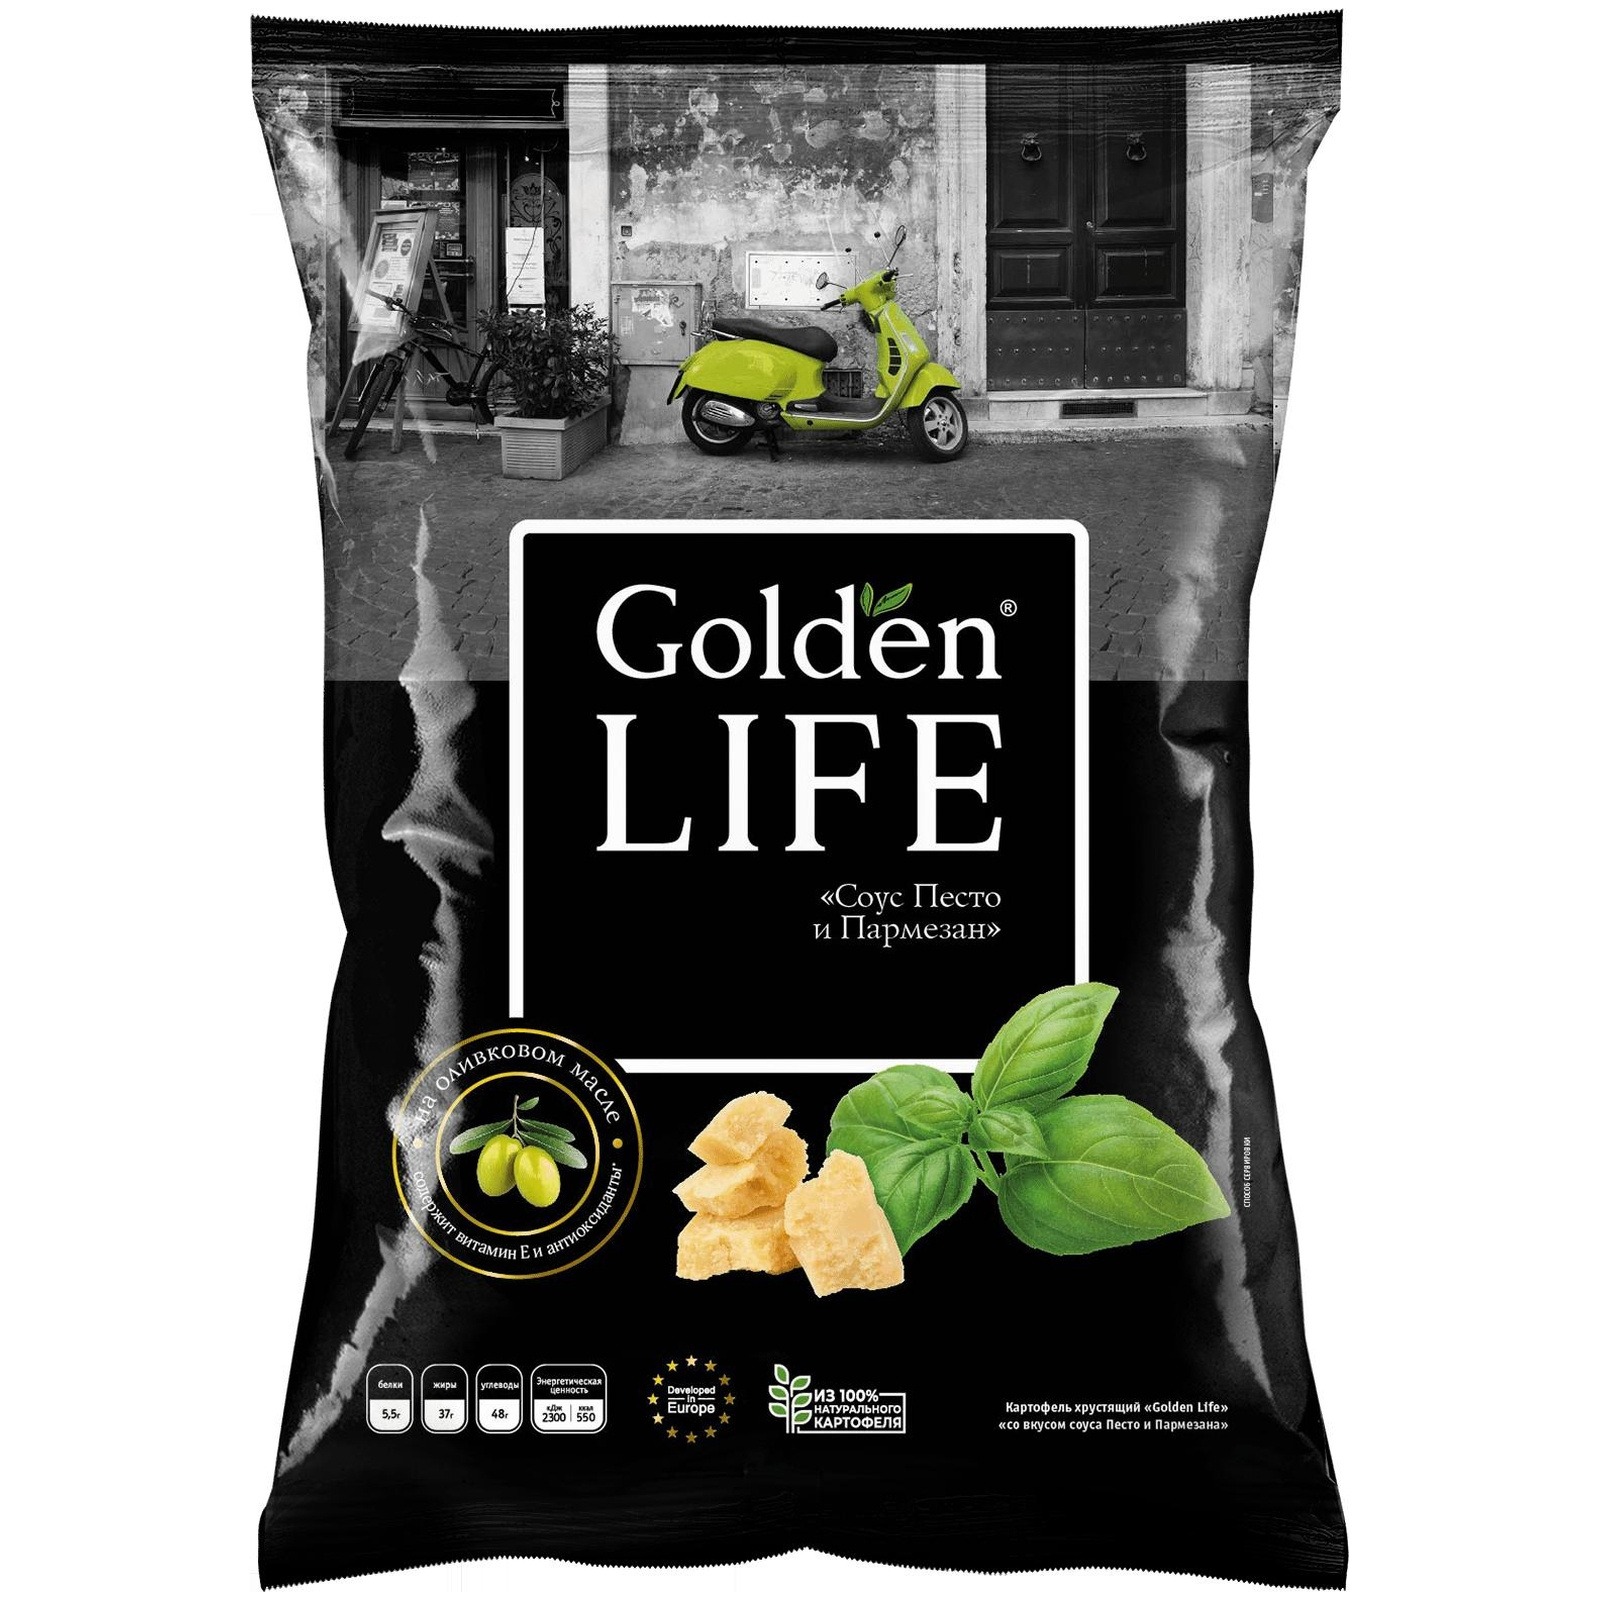 Чипсы Golden Life картофельные песто и пармезан, 90 г чипсы ufeelgood вегетерианские свекла пармезан 50 г